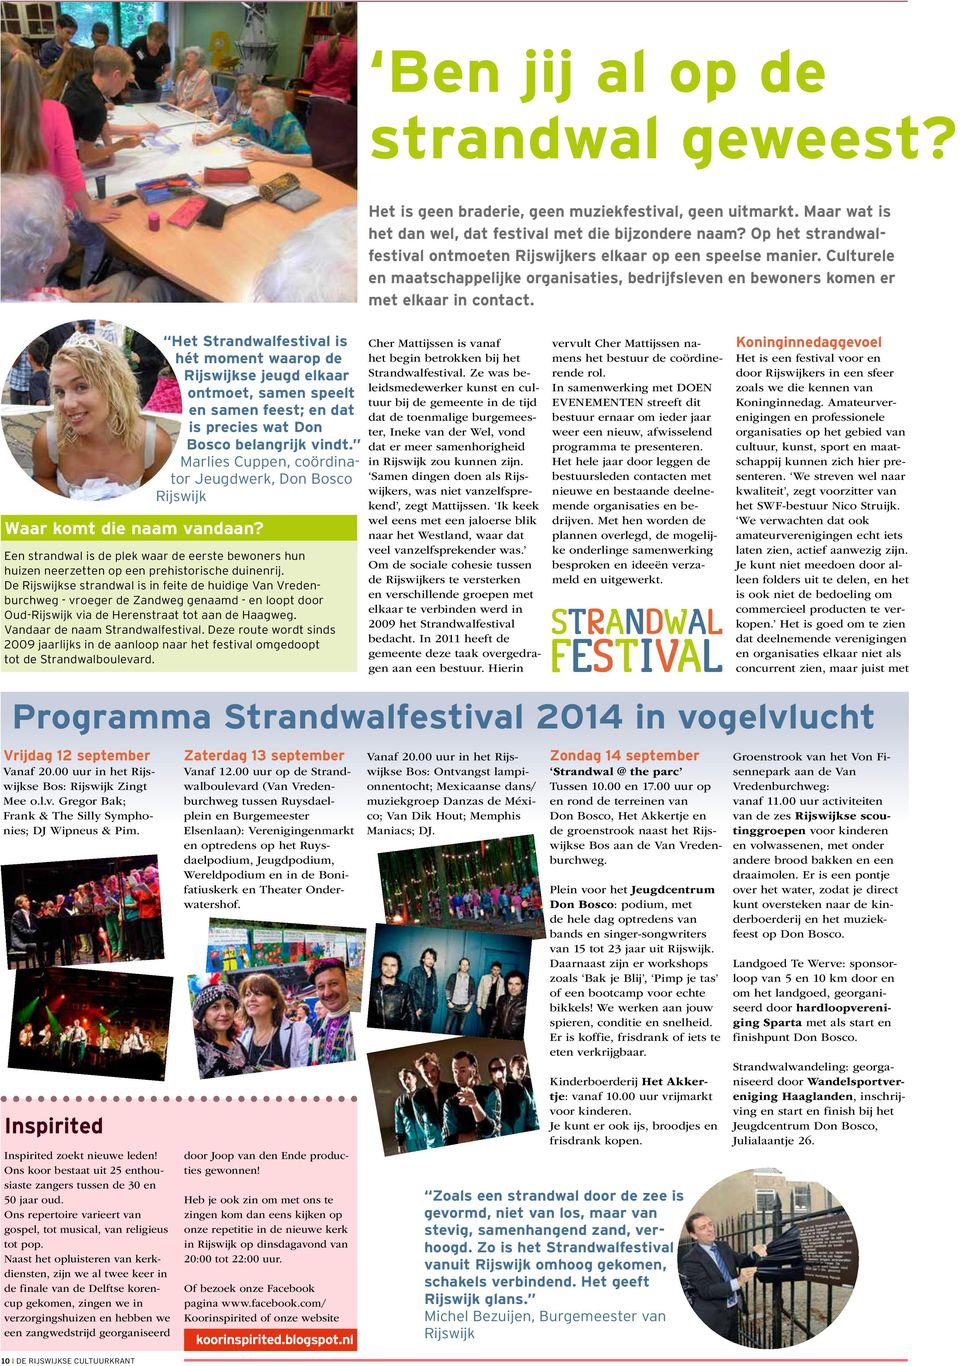 Het Strandwalfestival is hét moment waarop de Rijswijkse jeugd elkaar ontmoet, samen speelt en samen feest; en dat is precies wat Don Bosco belangrijk vindt.